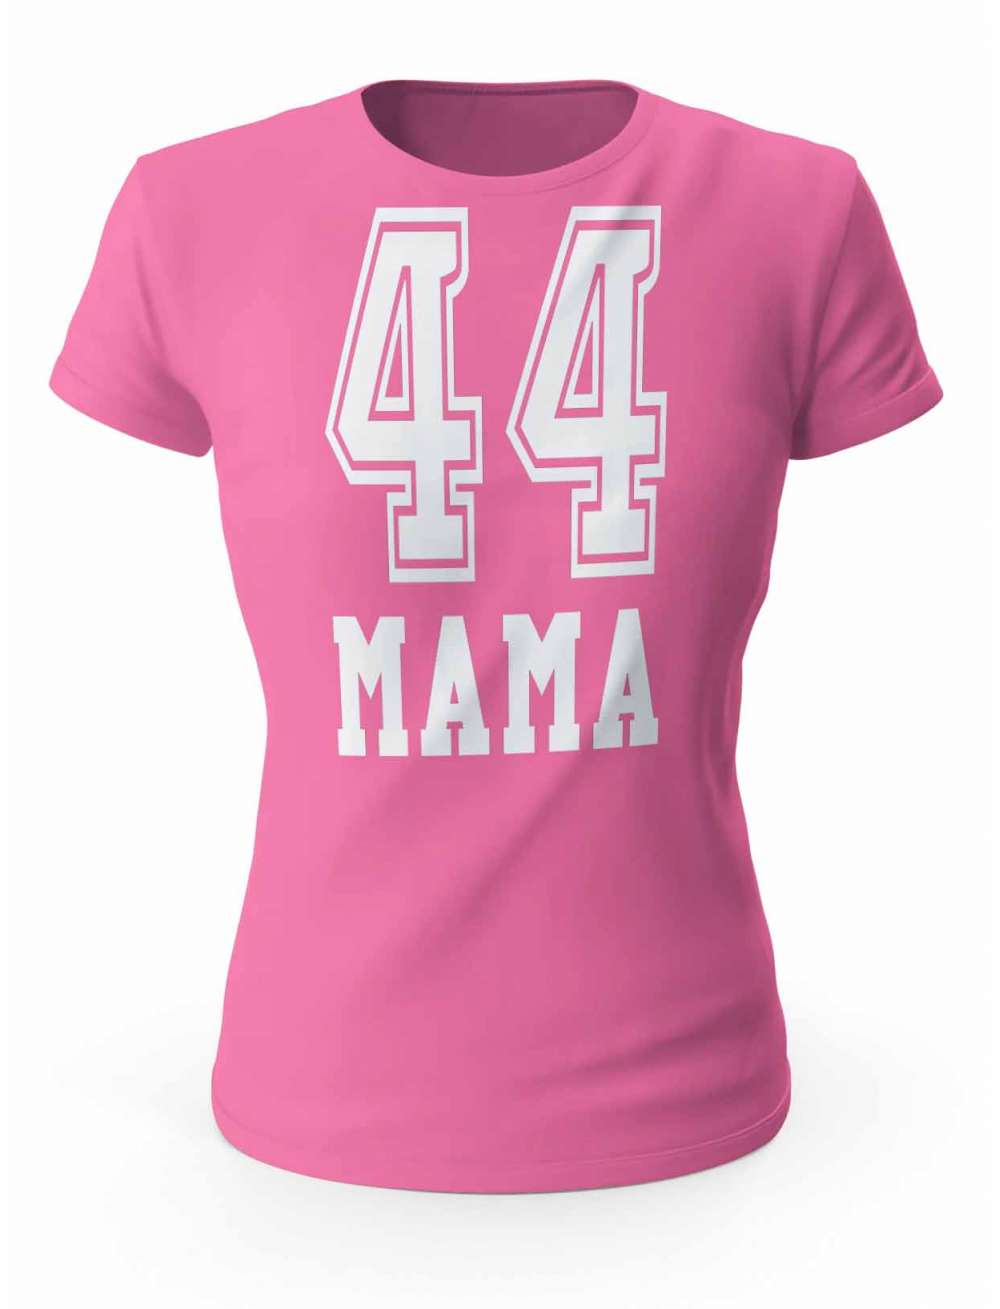 Koszulka Damska Drużyna Mama 44, Prezent T-shirt dla Mamy